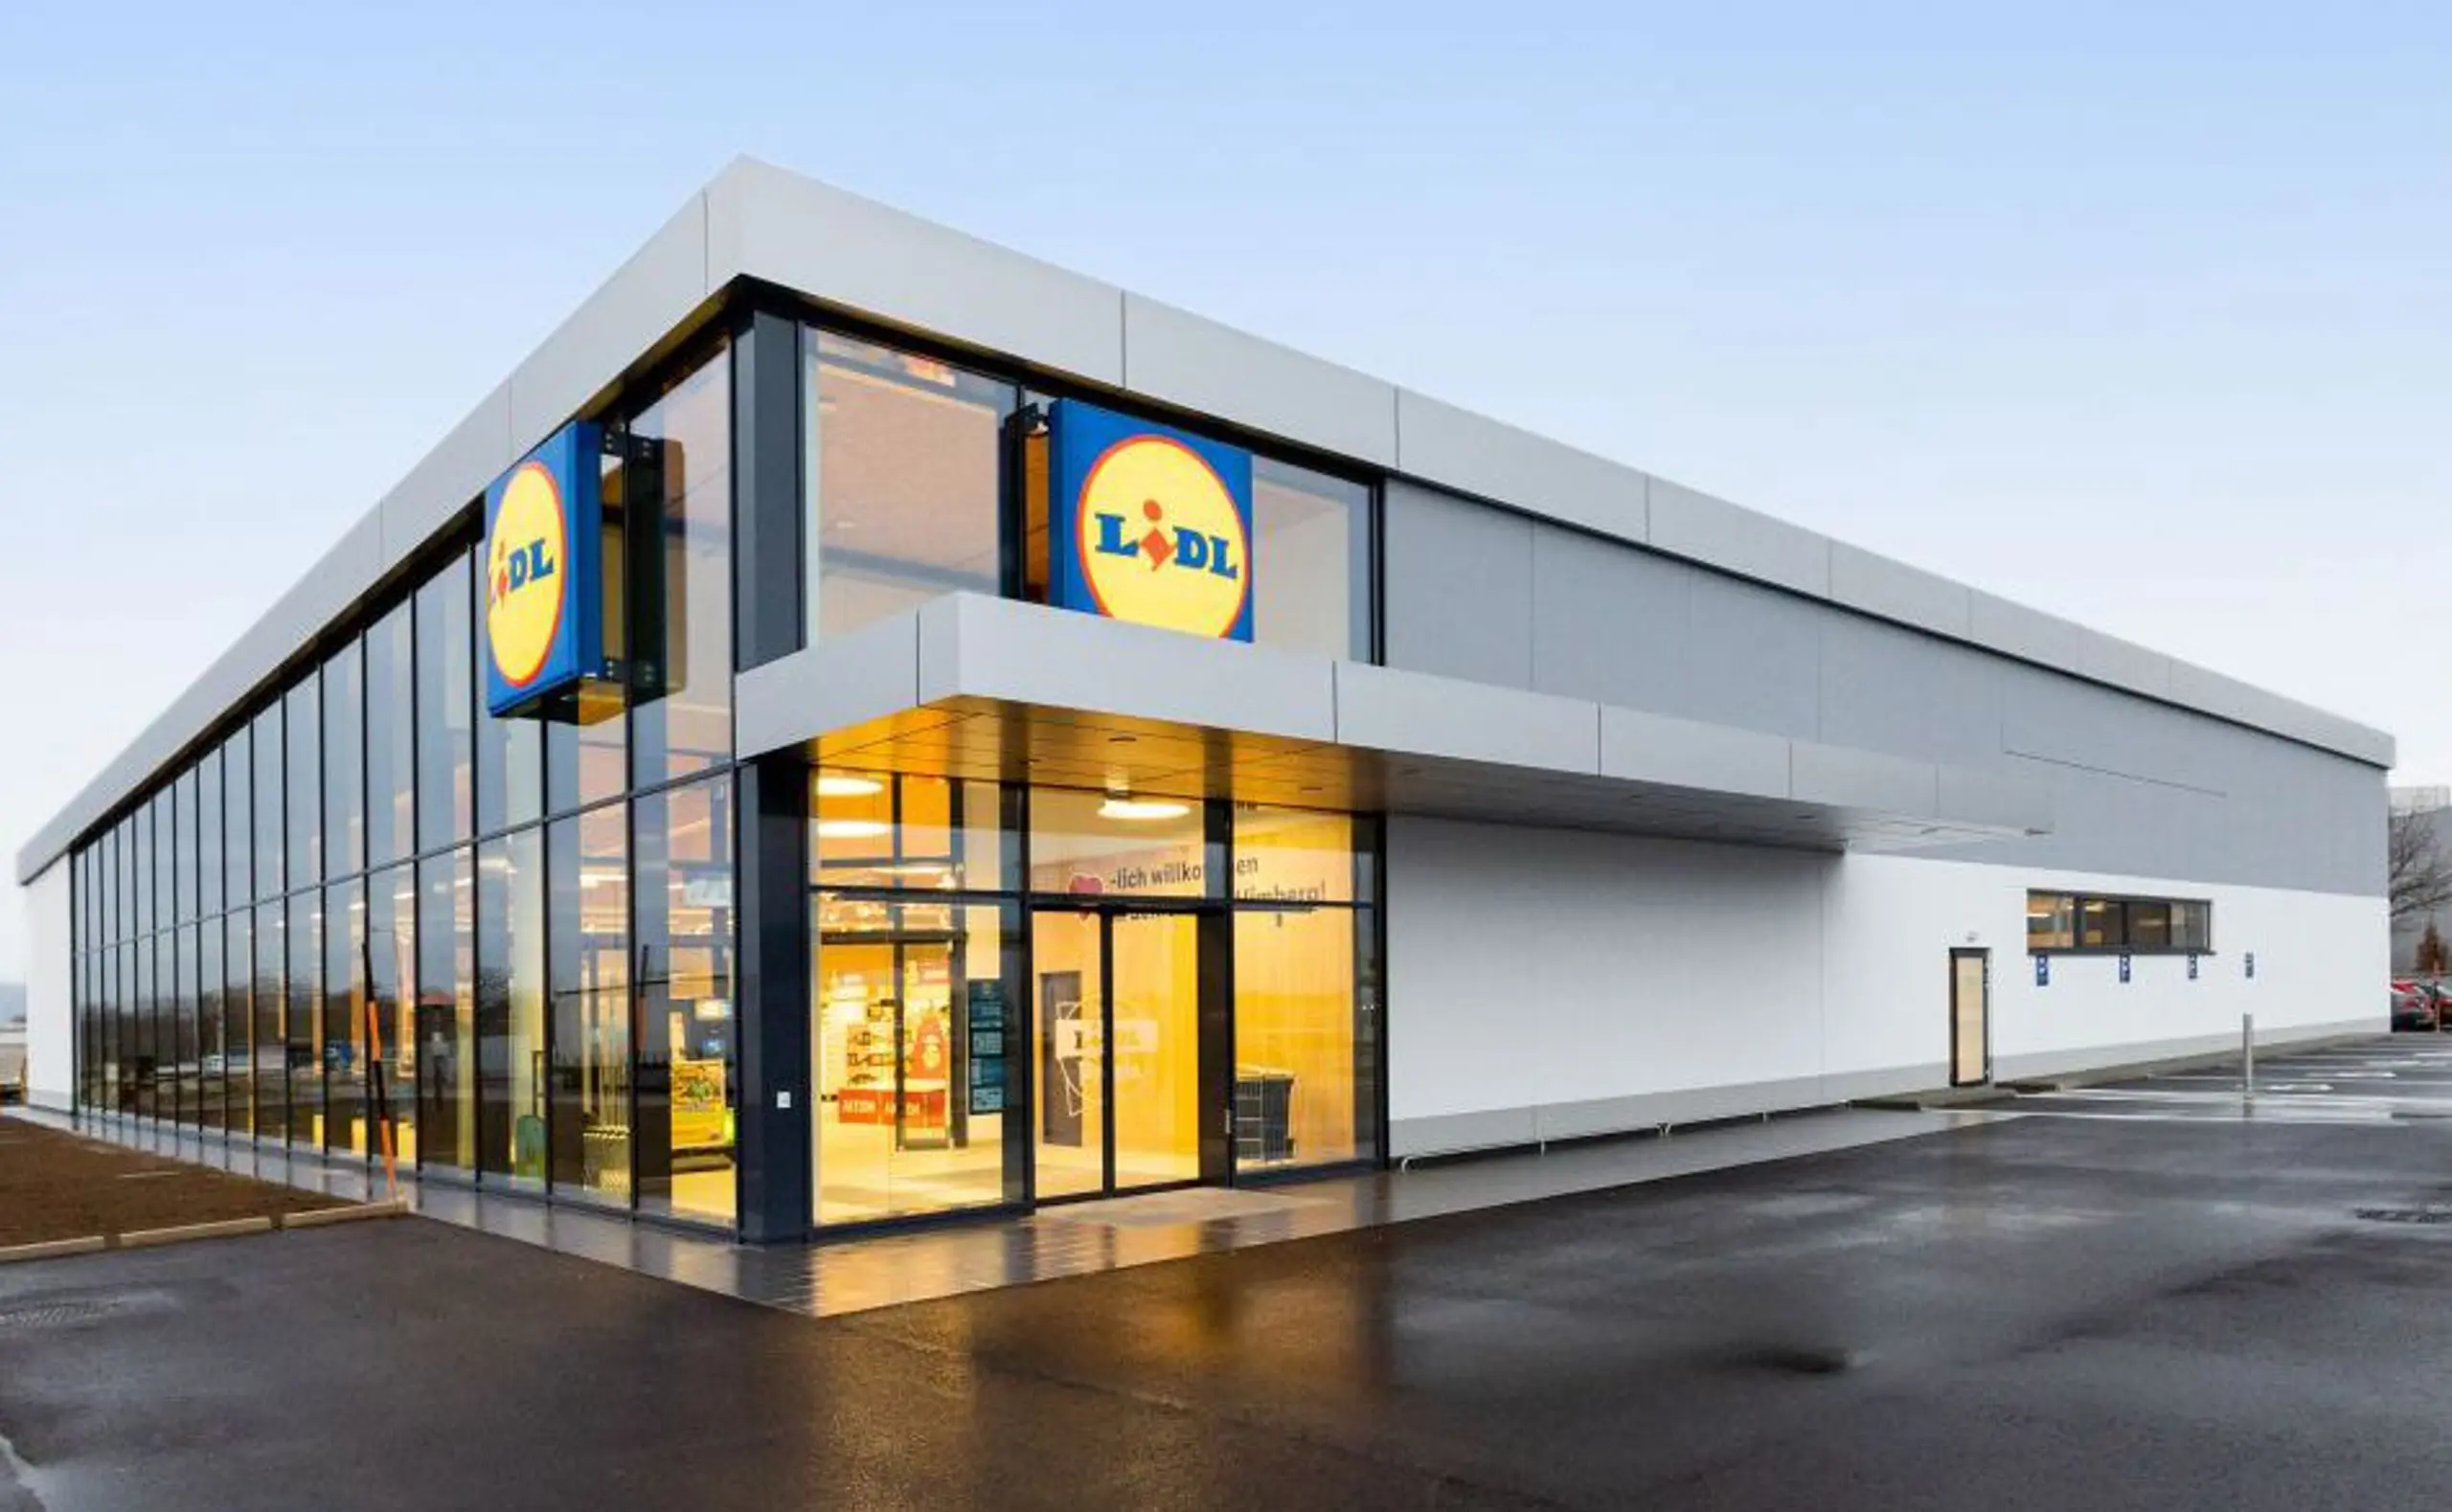 Lidl ist seit über 25 Jahren in Österreich aktiv. Das Unternehmen betreibt 250 Fililalen, beschäftigt 5.800 Mitarbeiter und hat zuletzt einen Umsatz von 1,6 Milliarden € erwirtschaftet.